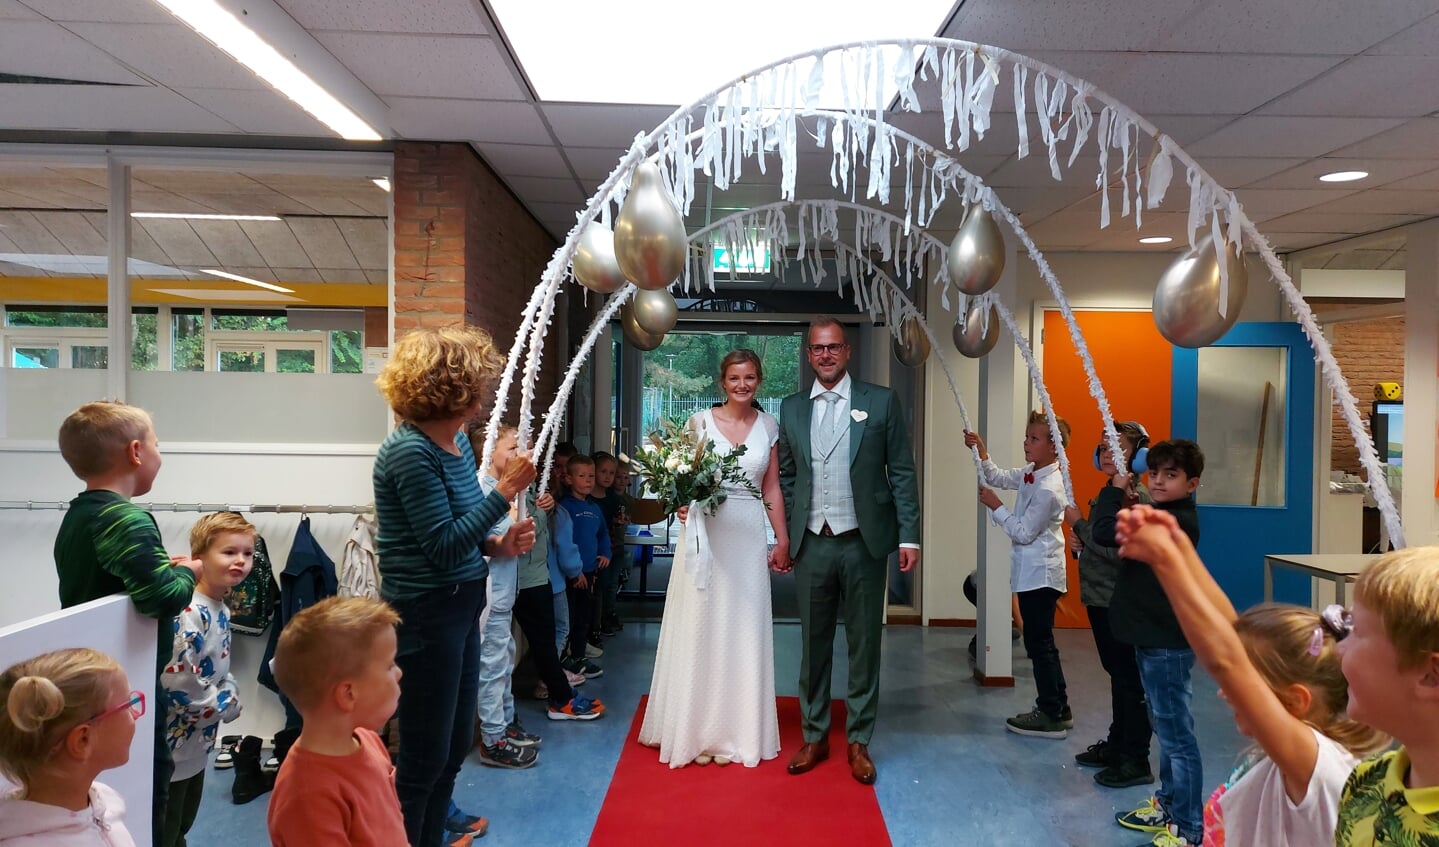 Om 11 uur kwam het bruidspaar aan in de prachtig versierde gang vol bogen, slingers en ballonnen.